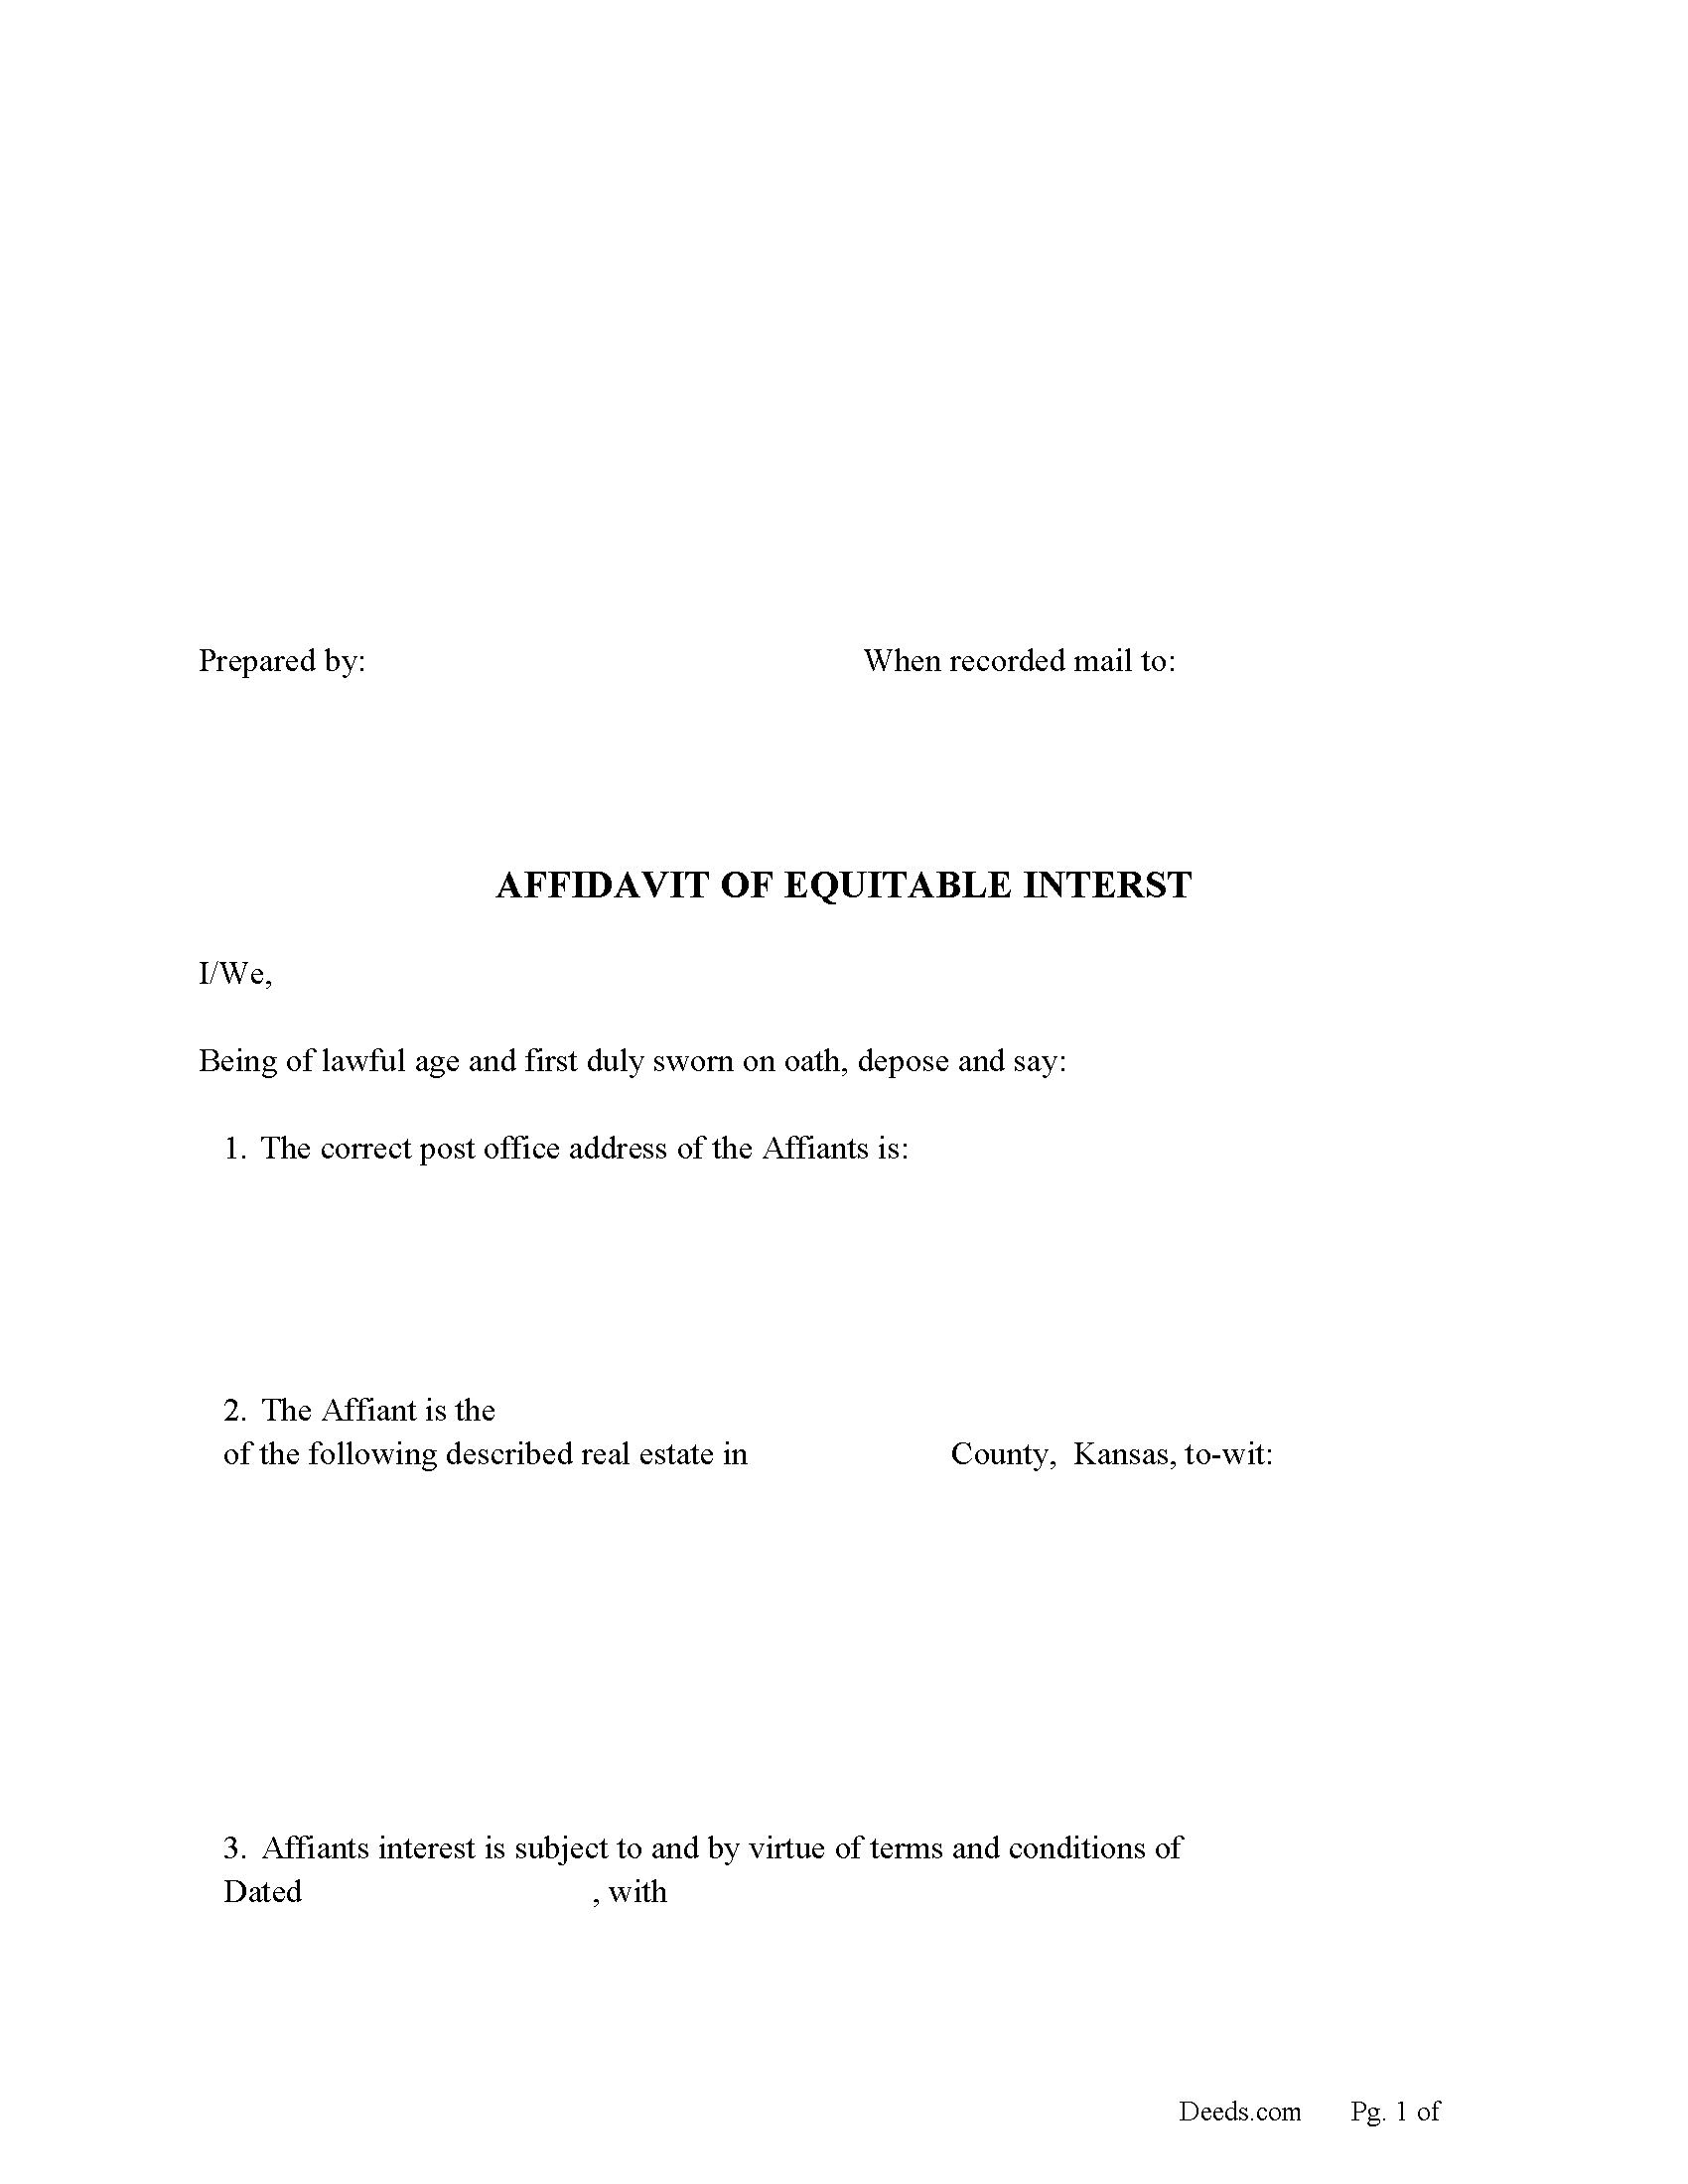 Affidavit for Equitable Interest Form